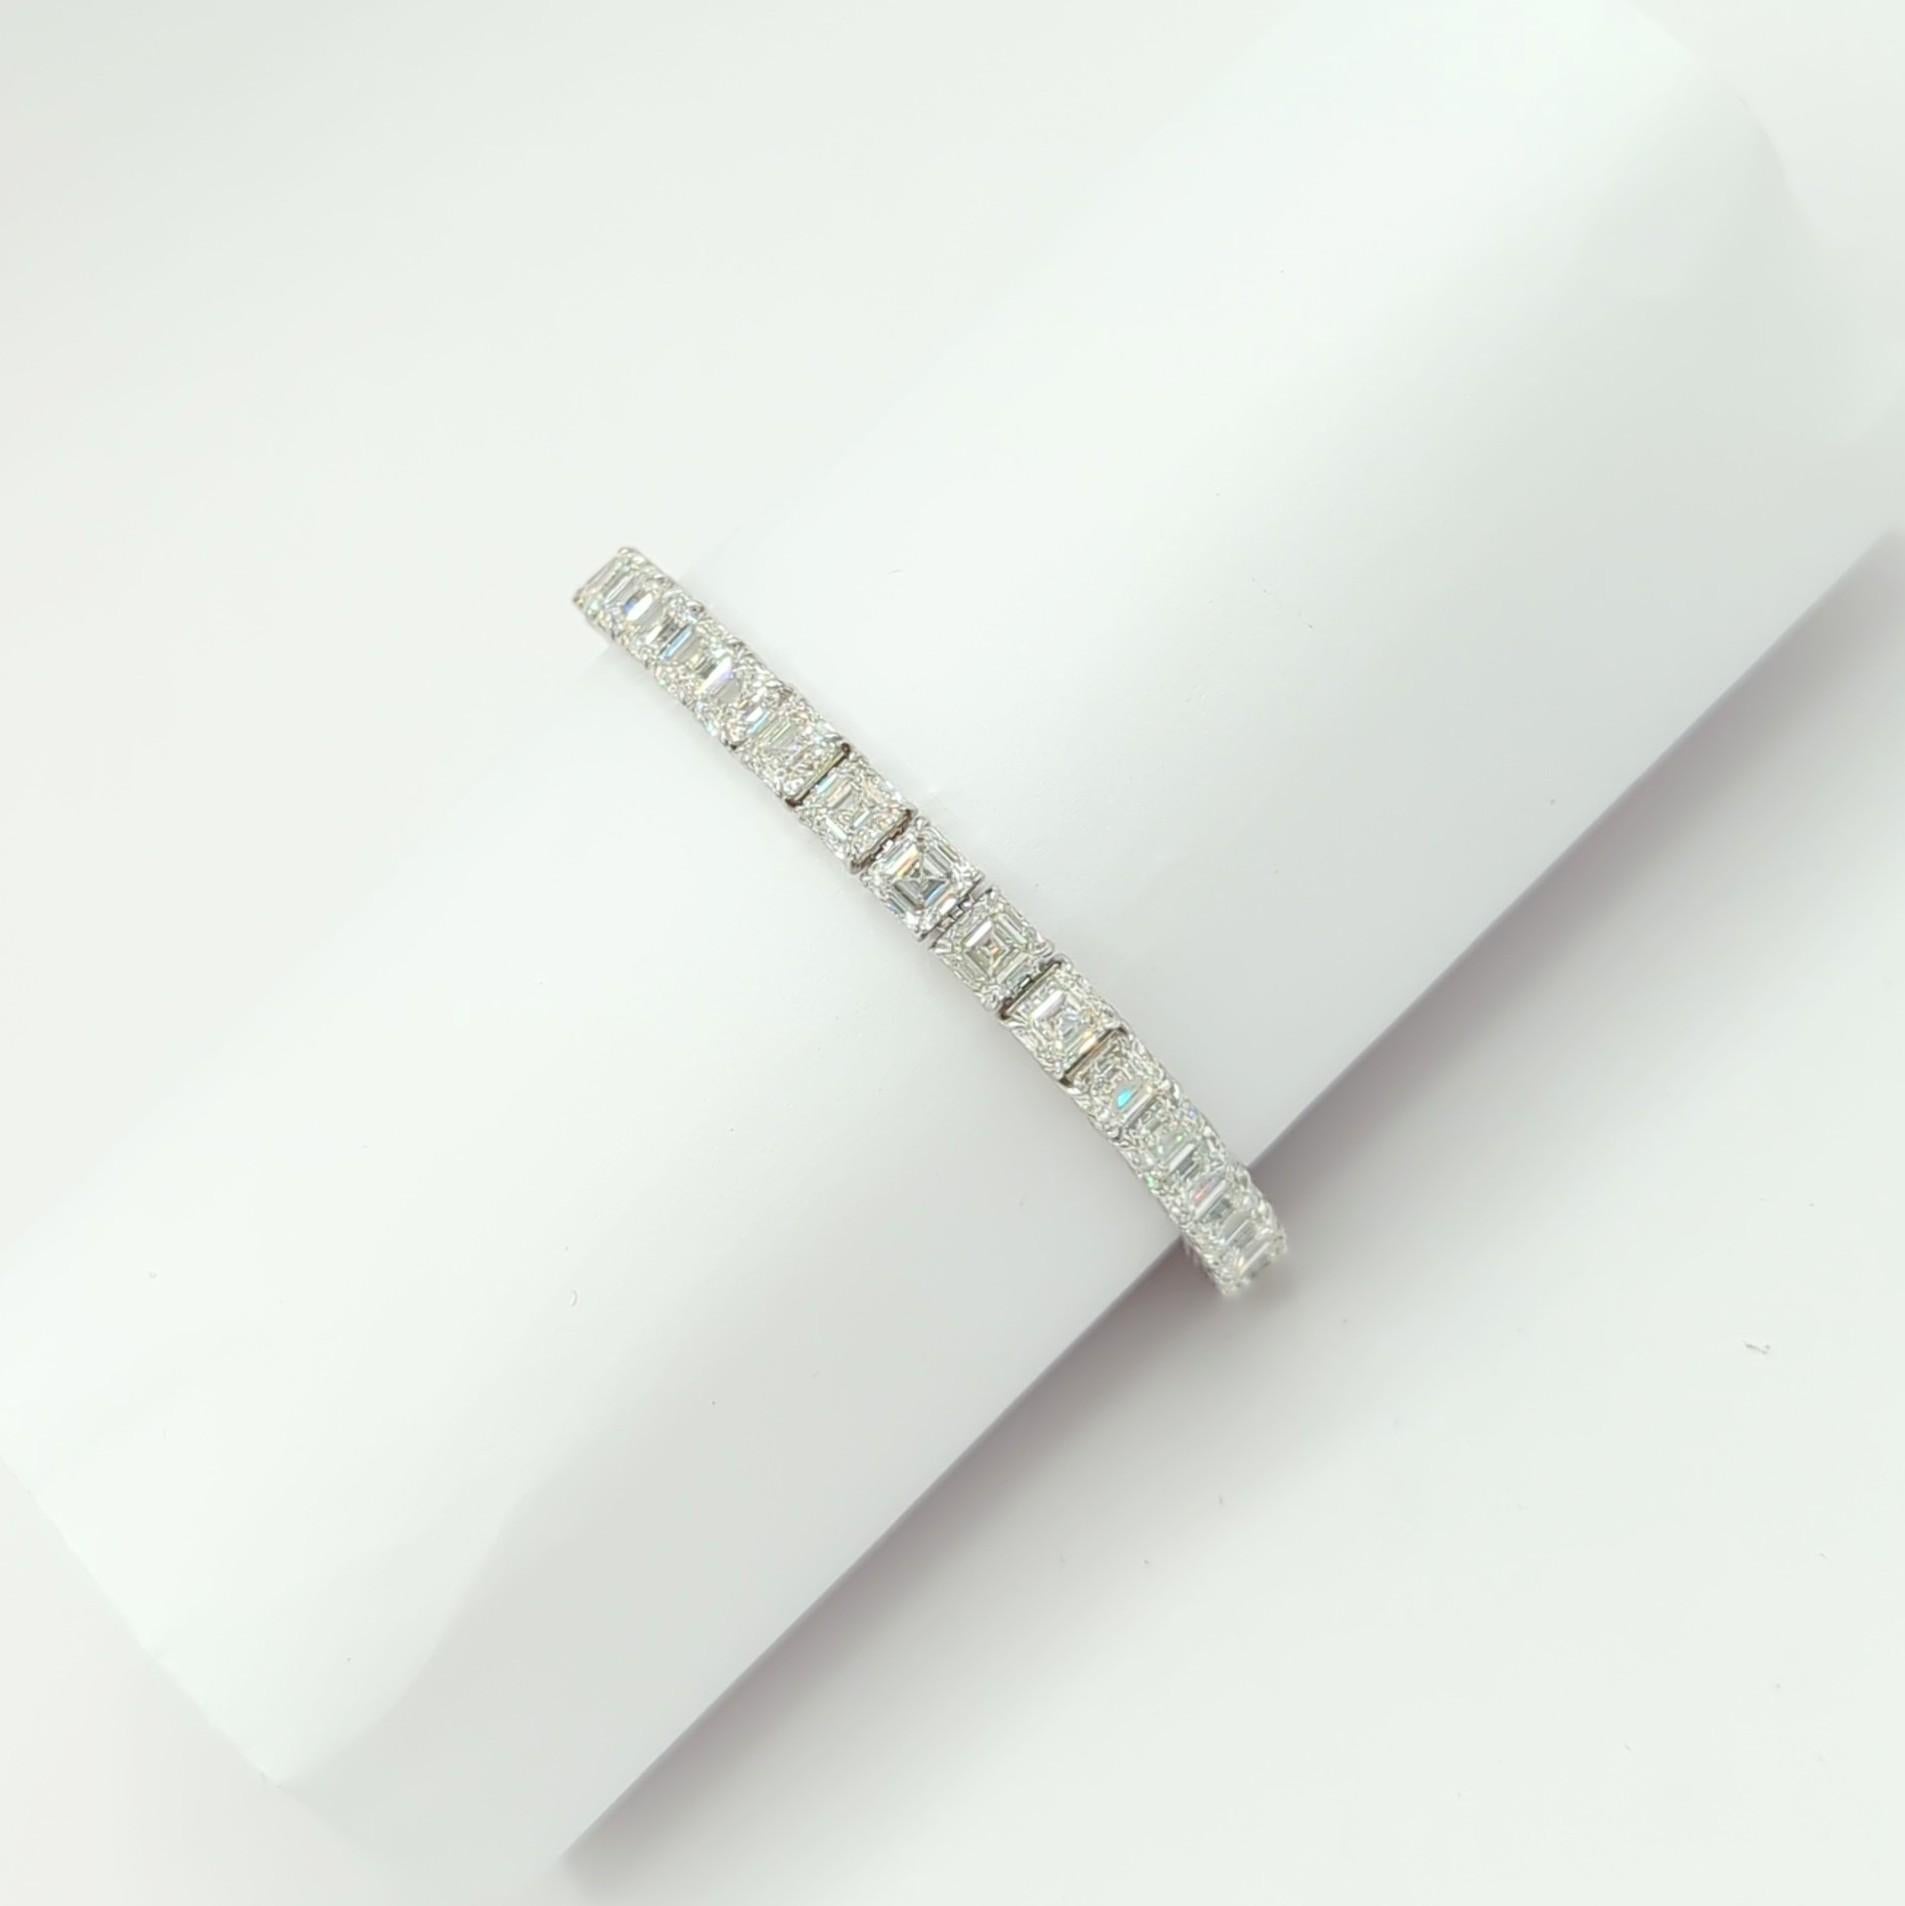 Bracelet tennis en or blanc 18 carats avec diamants blancs taille Asscher de 34,06 carats, certifiés GIA 2